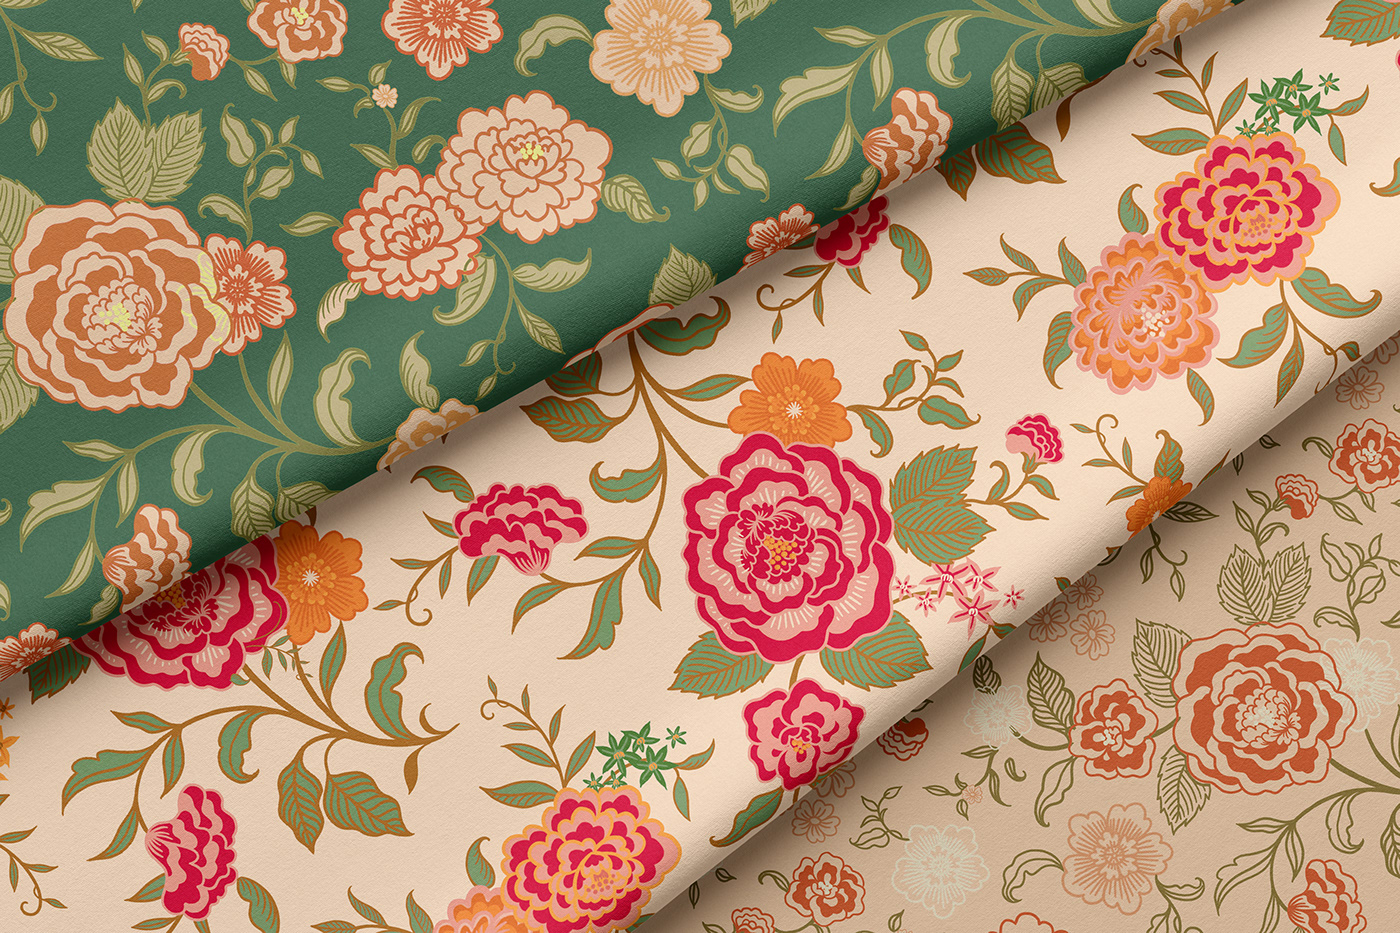 Design textile pattern design  textile surface design Flowers floral pattern design line pauvert fashion design